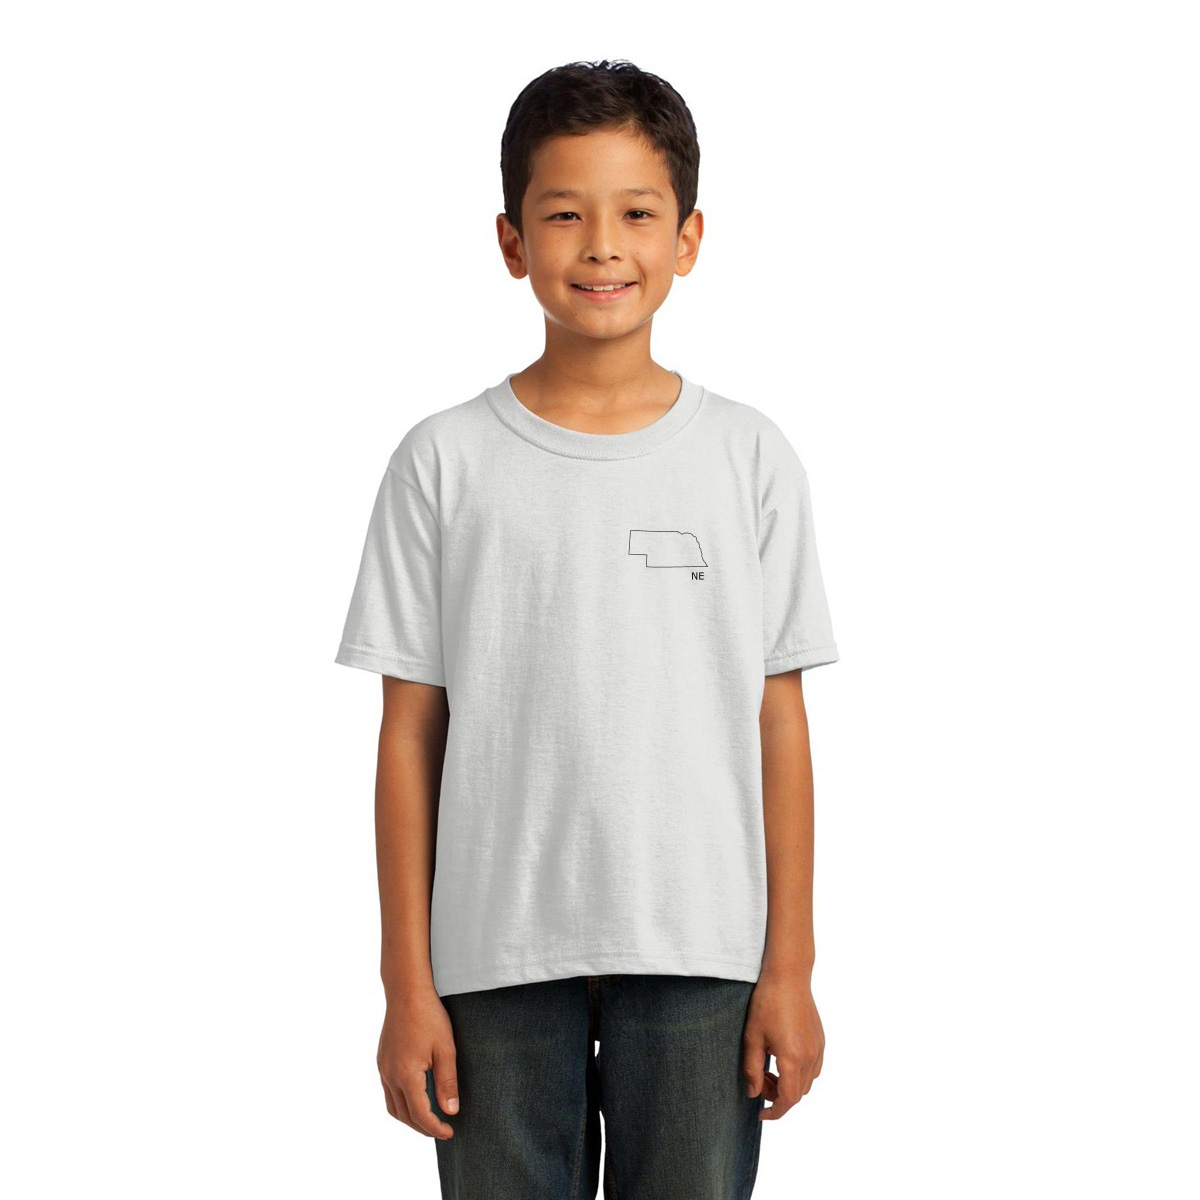 Nebraska Kids T-shirt | White